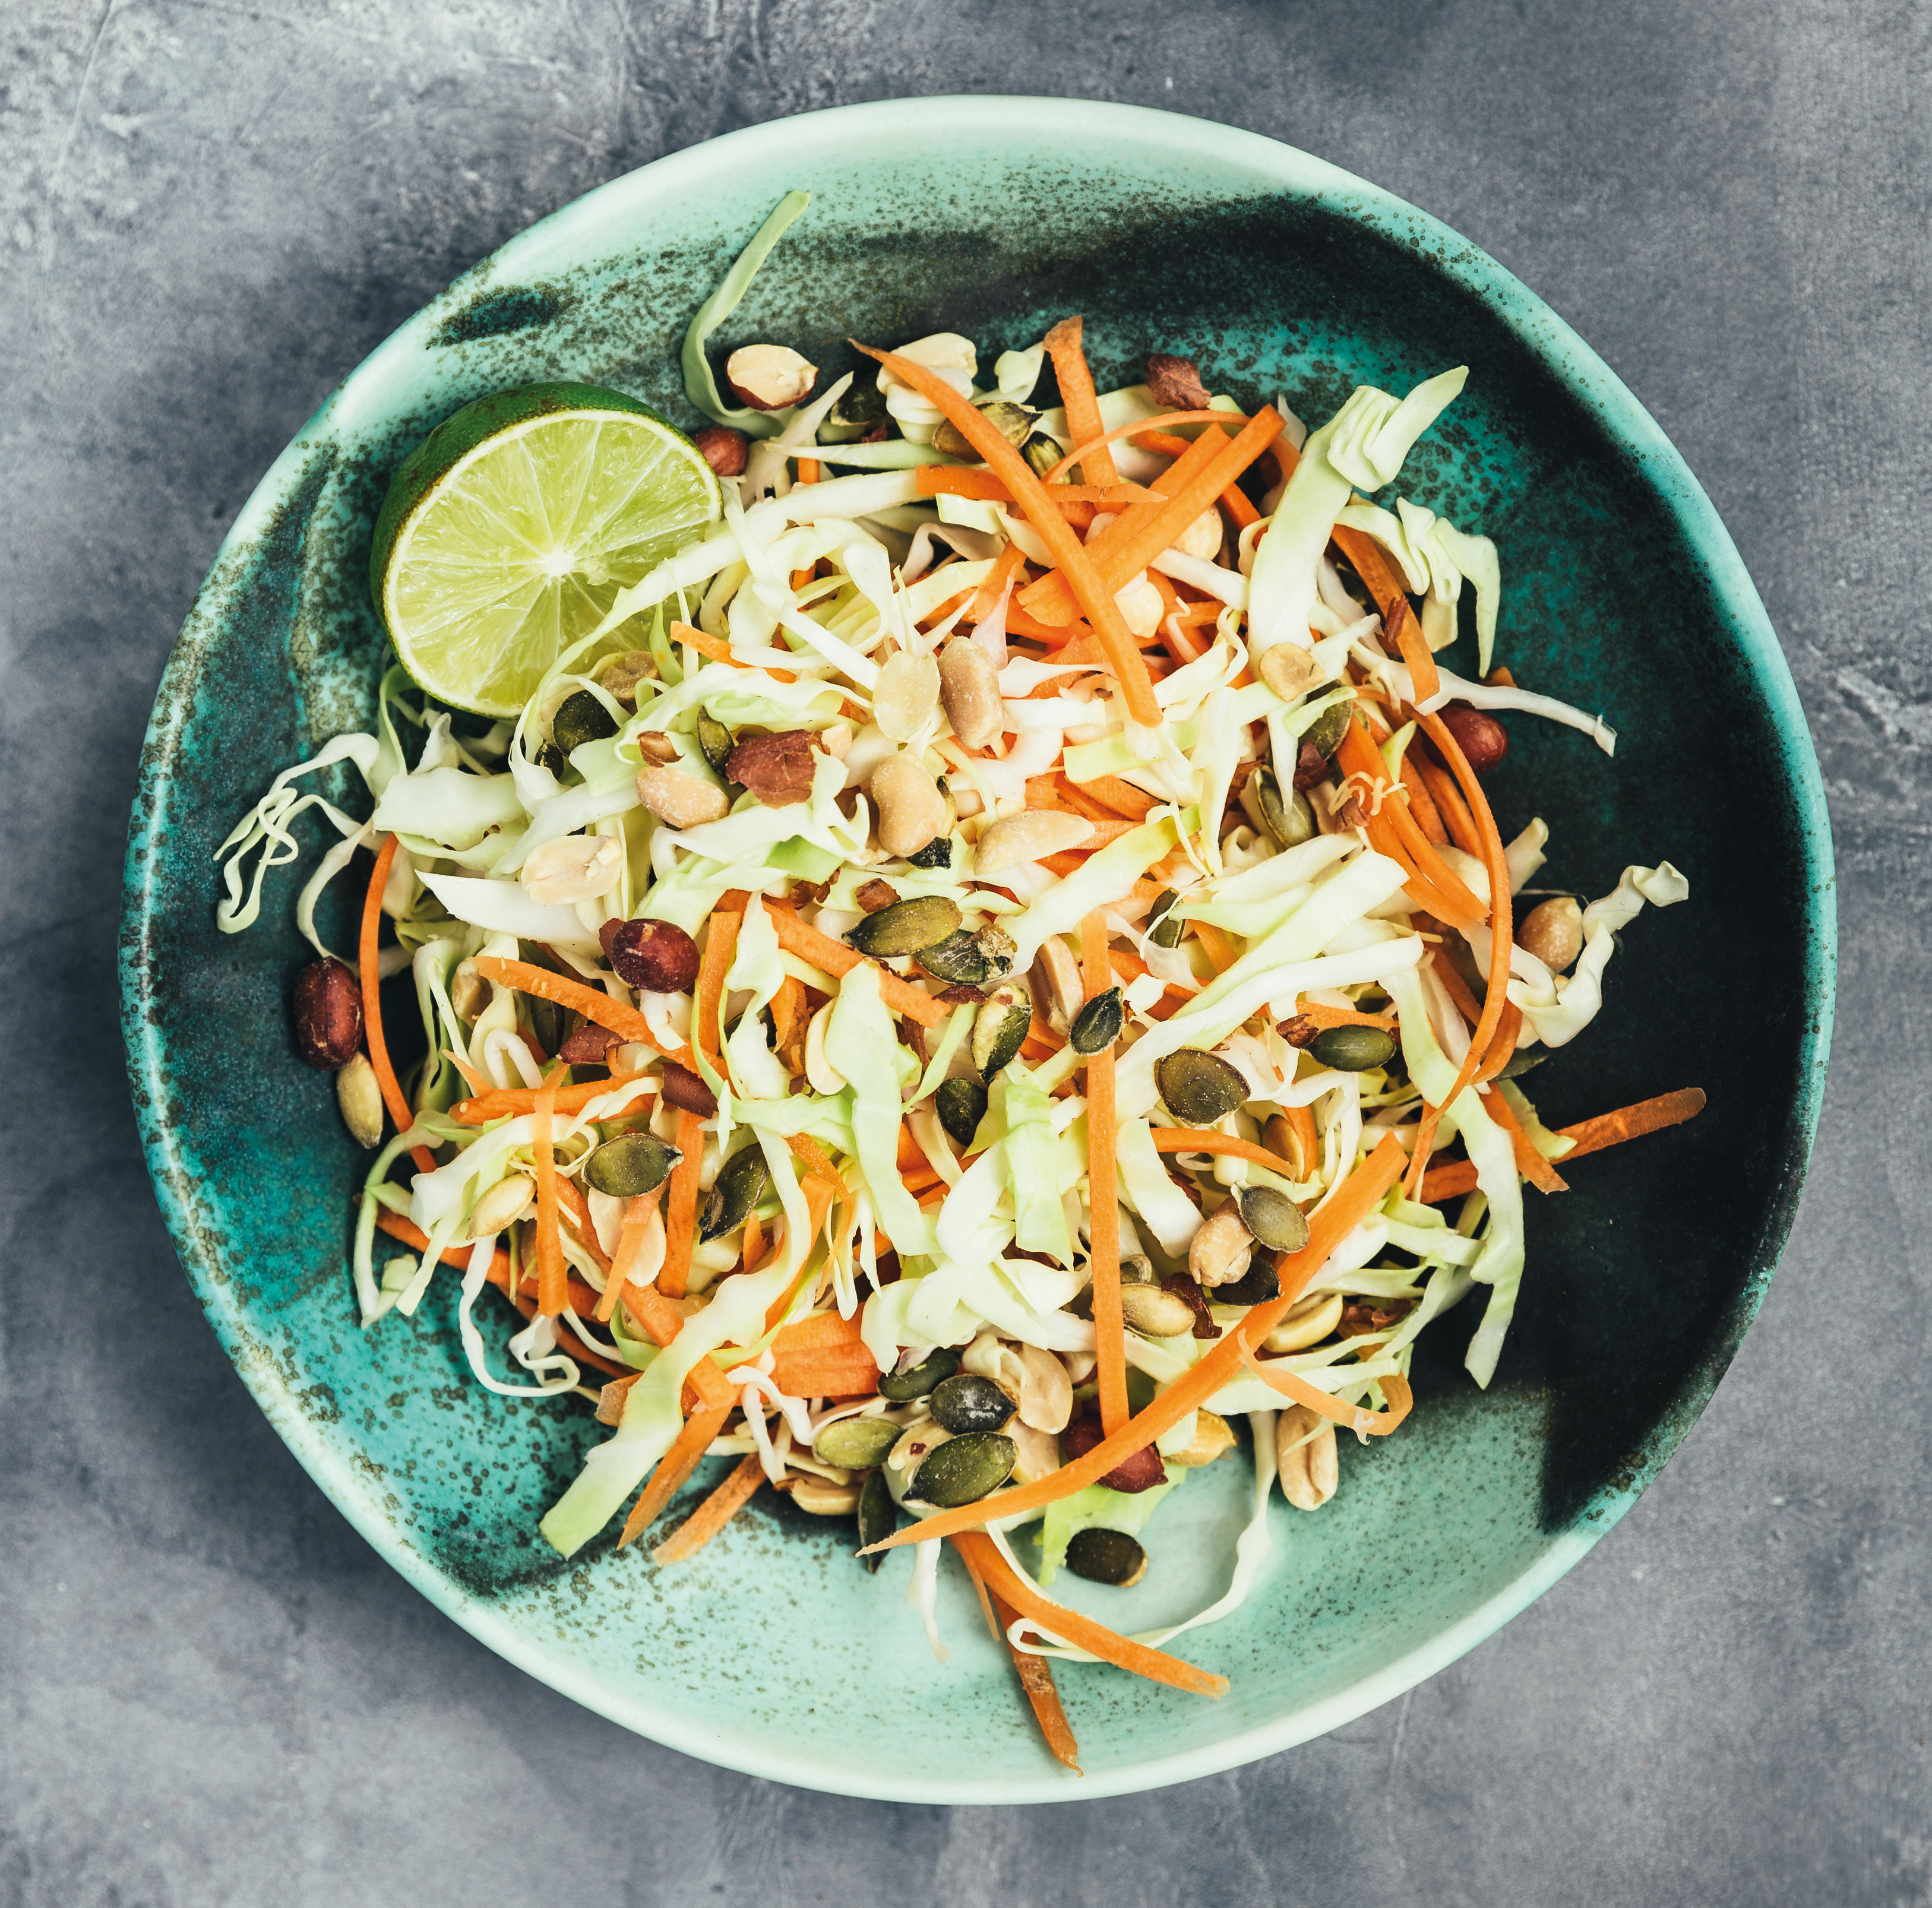 Kålsalat salat mix | Enjoy Tasty - Earth Control